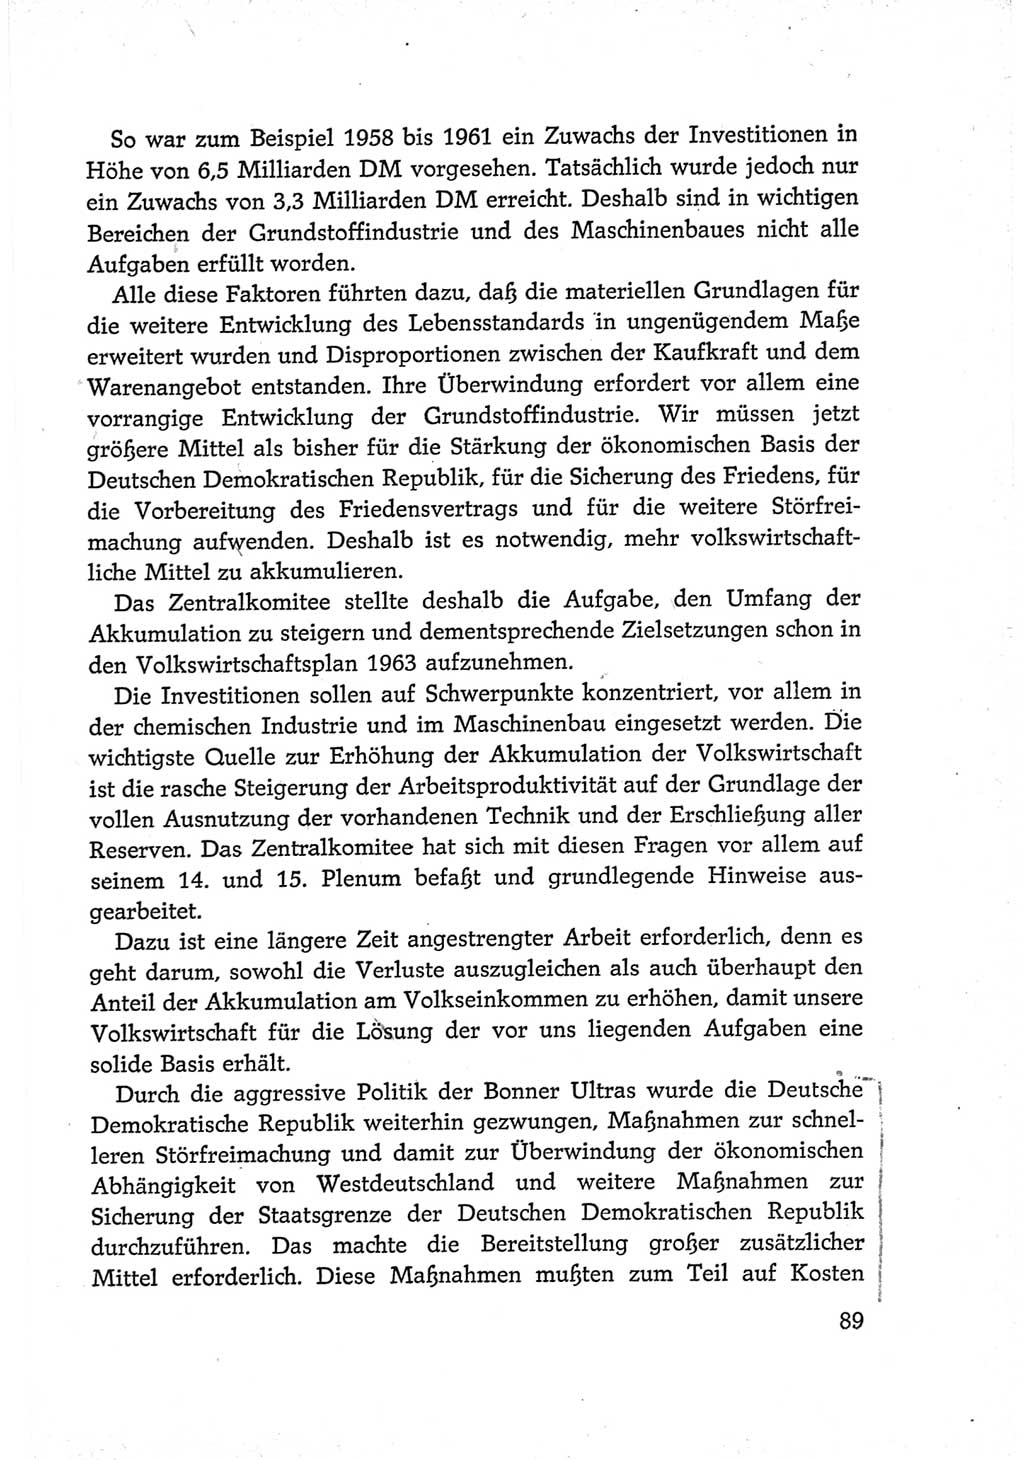 Protokoll der Verhandlungen des Ⅵ. Parteitages der Sozialistischen Einheitspartei Deutschlands (SED) [Deutsche Demokratische Republik (DDR)] 1963, Band Ⅳ, Seite 89 (Prot. Verh. Ⅵ. PT SED DDR 1963, Bd. Ⅳ, S. 89)